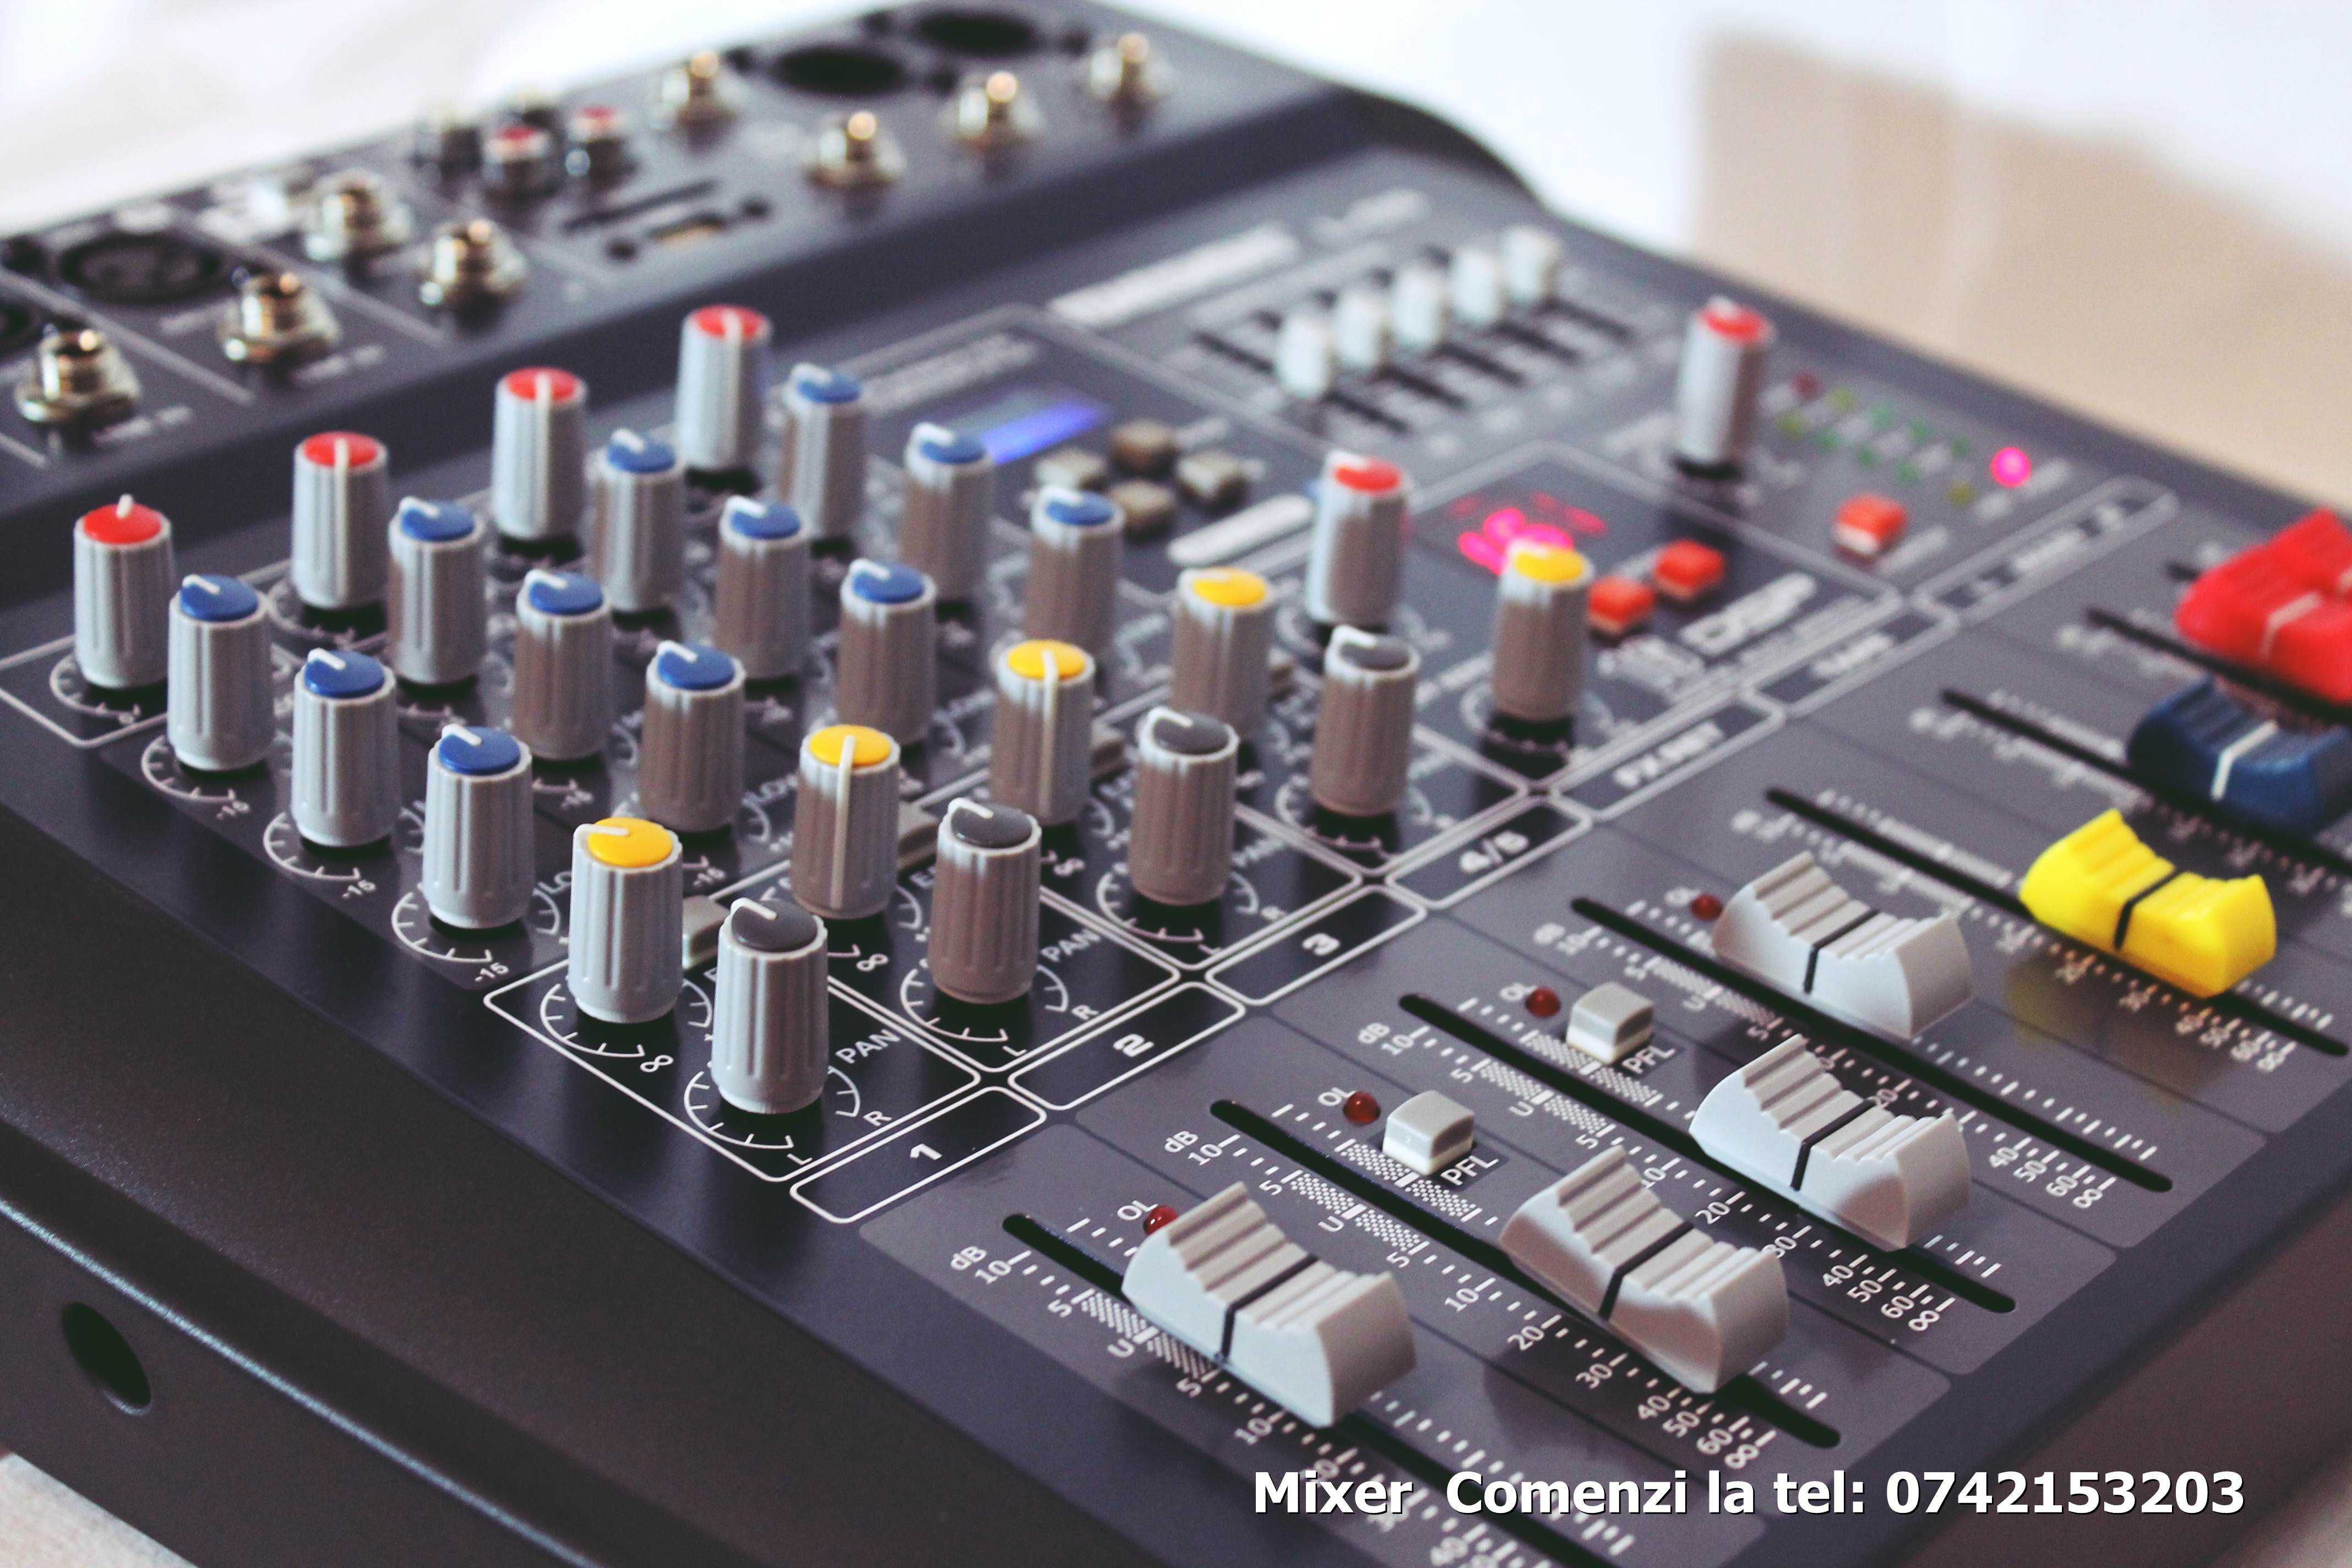 Mixer audio pro Themeseng V2 pentru formatie si DJ cu bluetoot USB